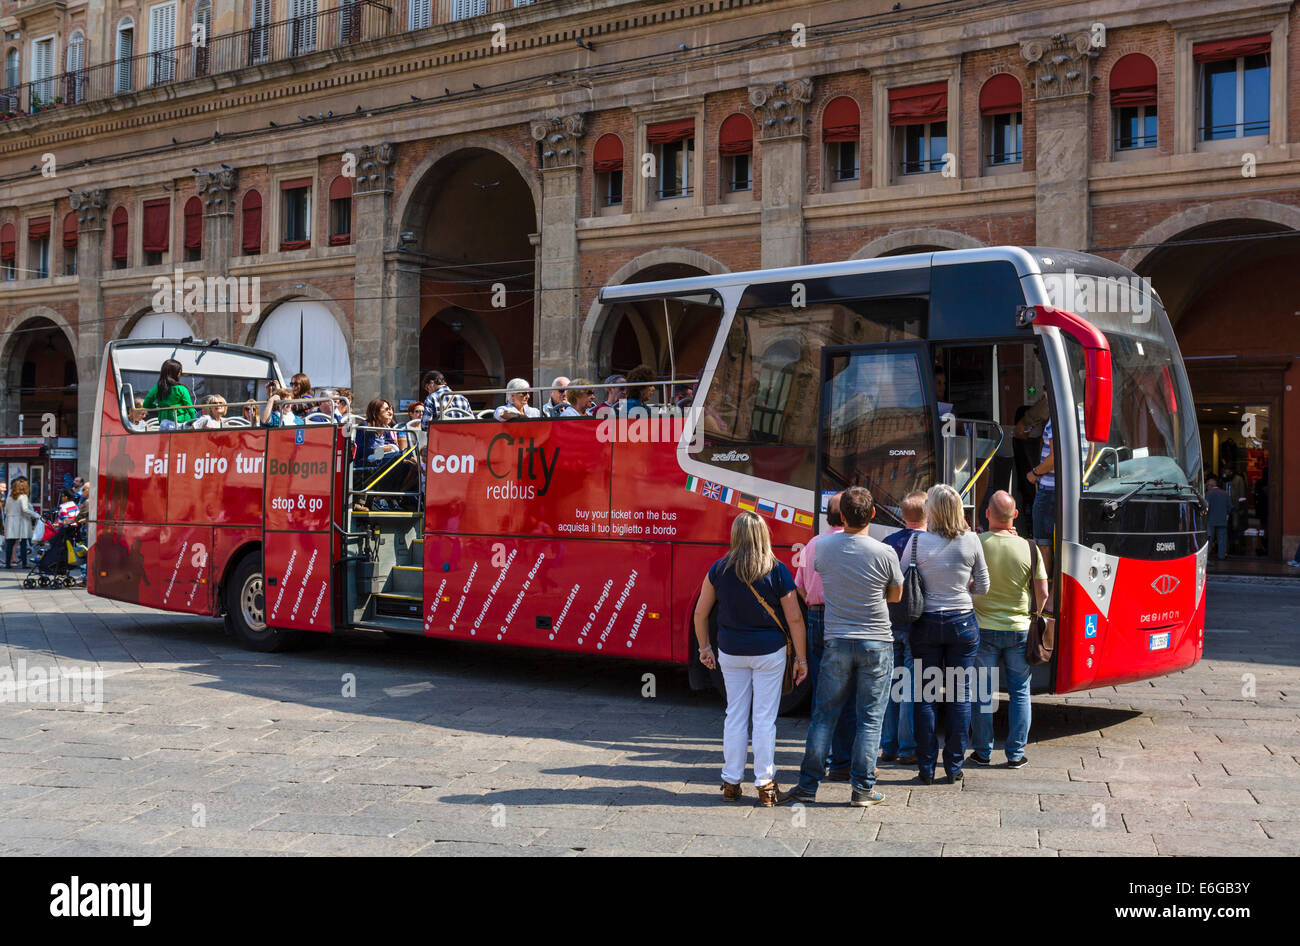 Tourists boarding a city tour bus in Piazza Maggiore, Bologna, Emilia Romagna, Italy Stock Photo